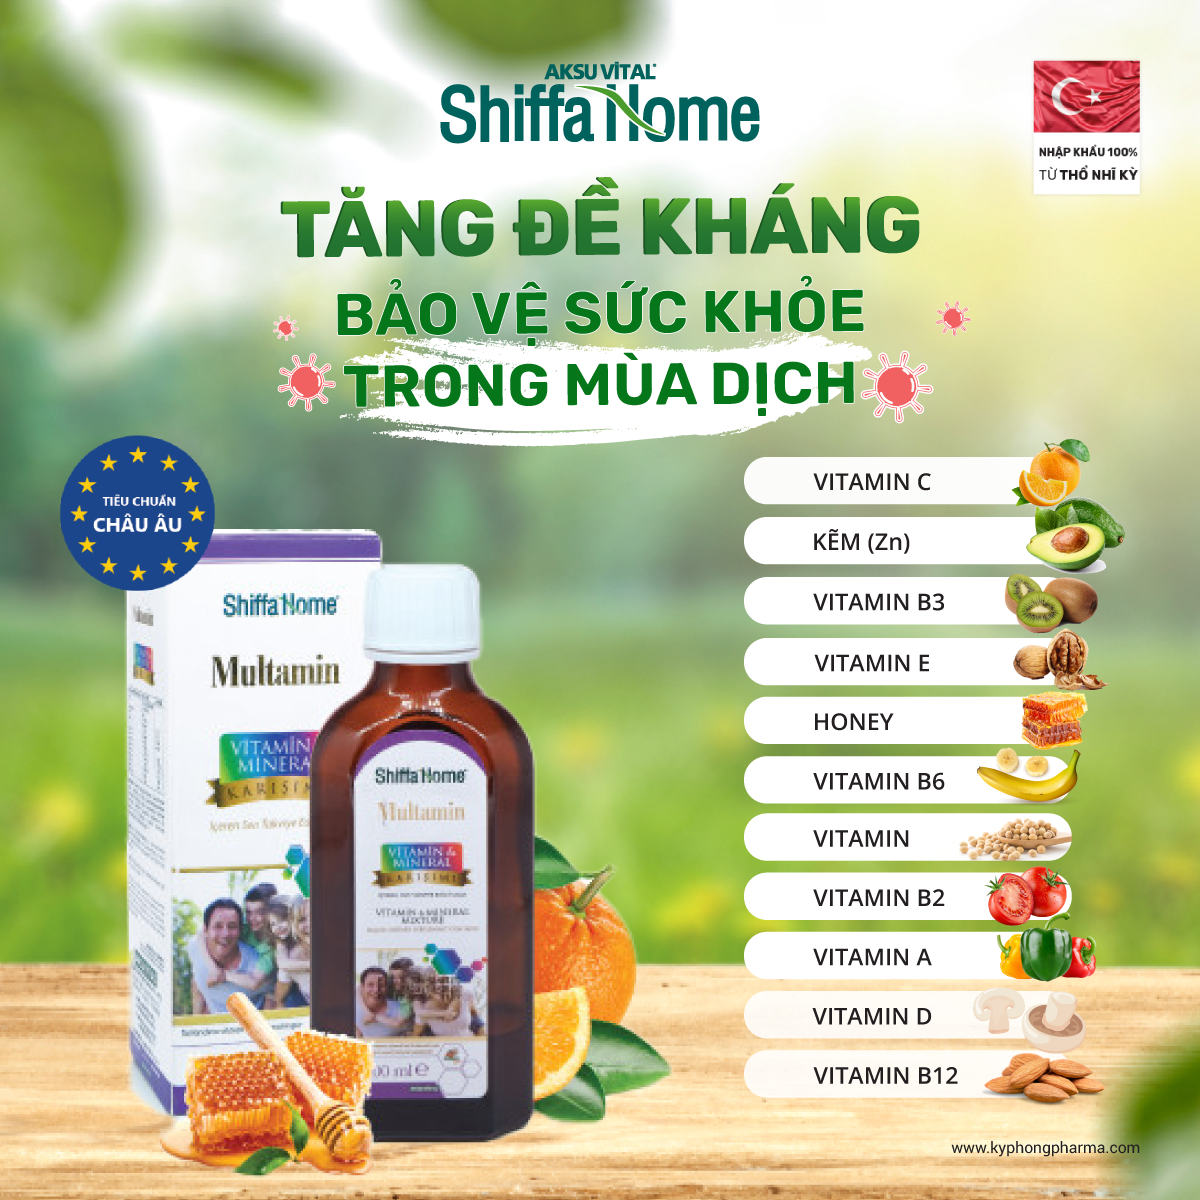 Thành phần và tác dụng của vitamin và khoáng chất Shiffa Home